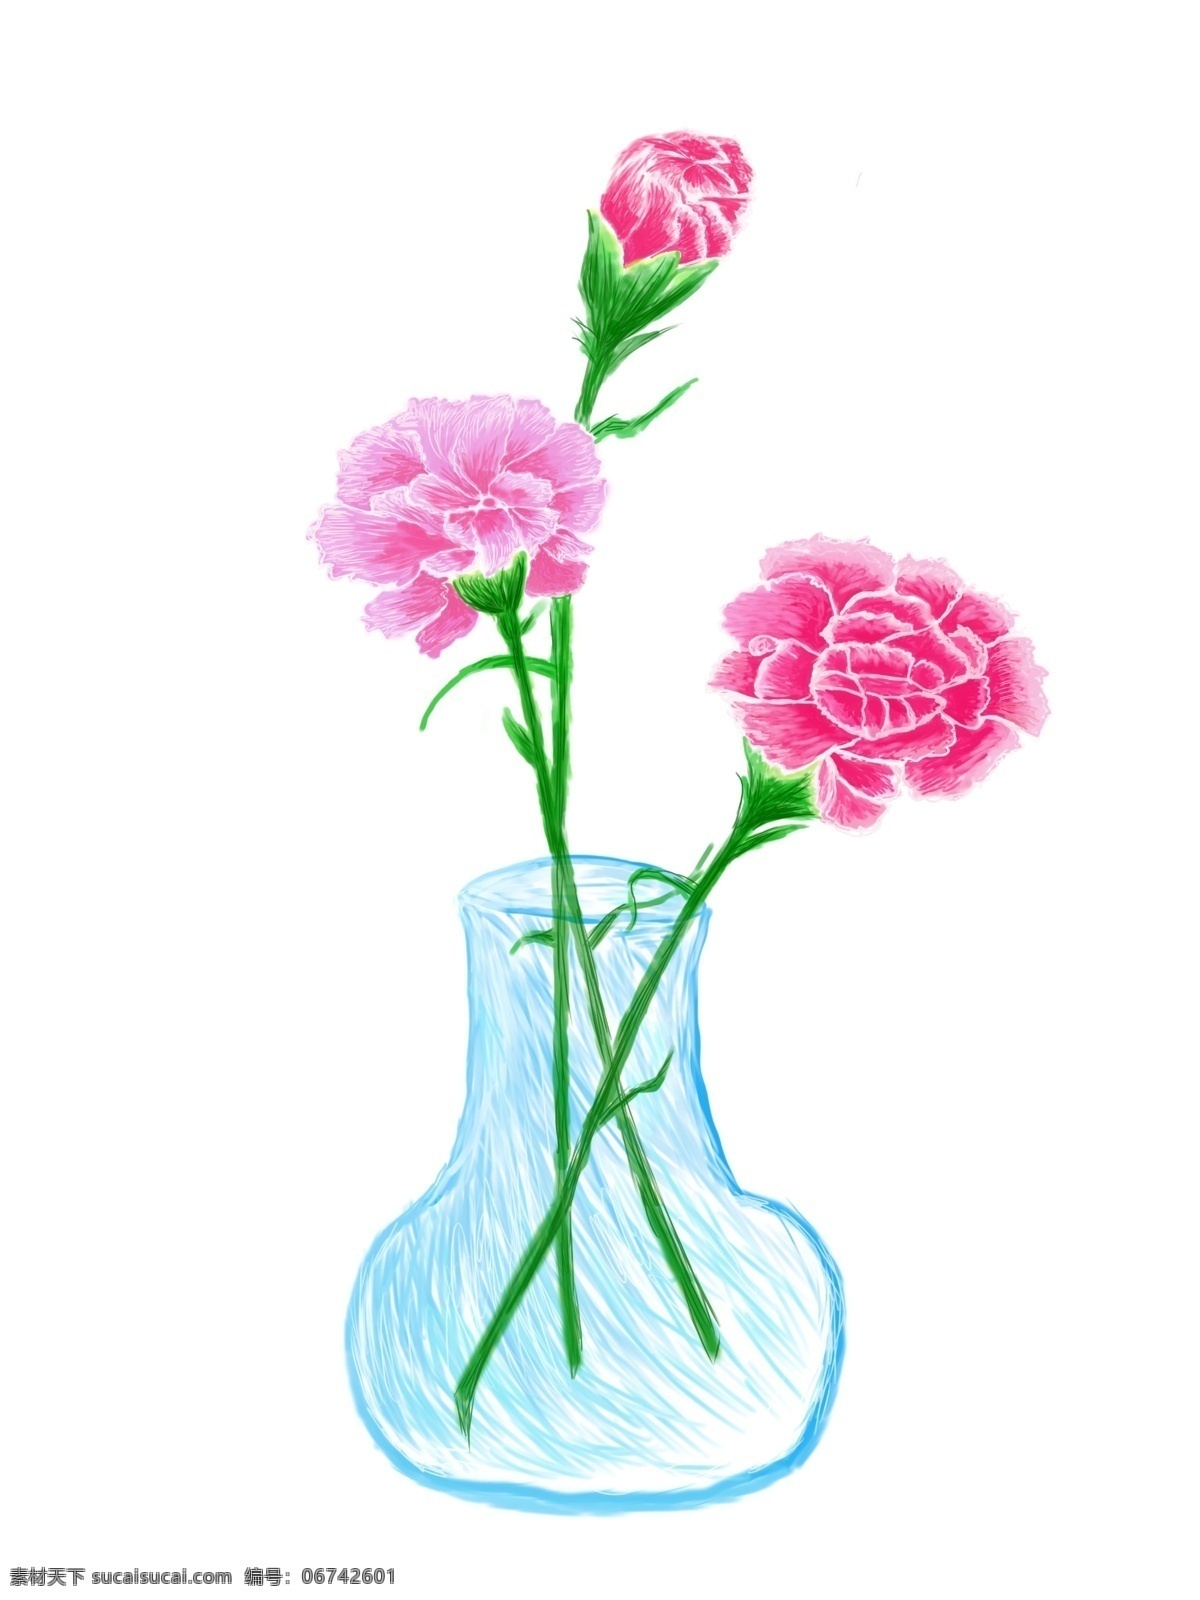 康乃馨 母亲节 手绘 花朵 花瓶 元素 康乃馨花卉 粉色 淘宝 天猫 电商 卡通手绘 装饰图案 节日花朵